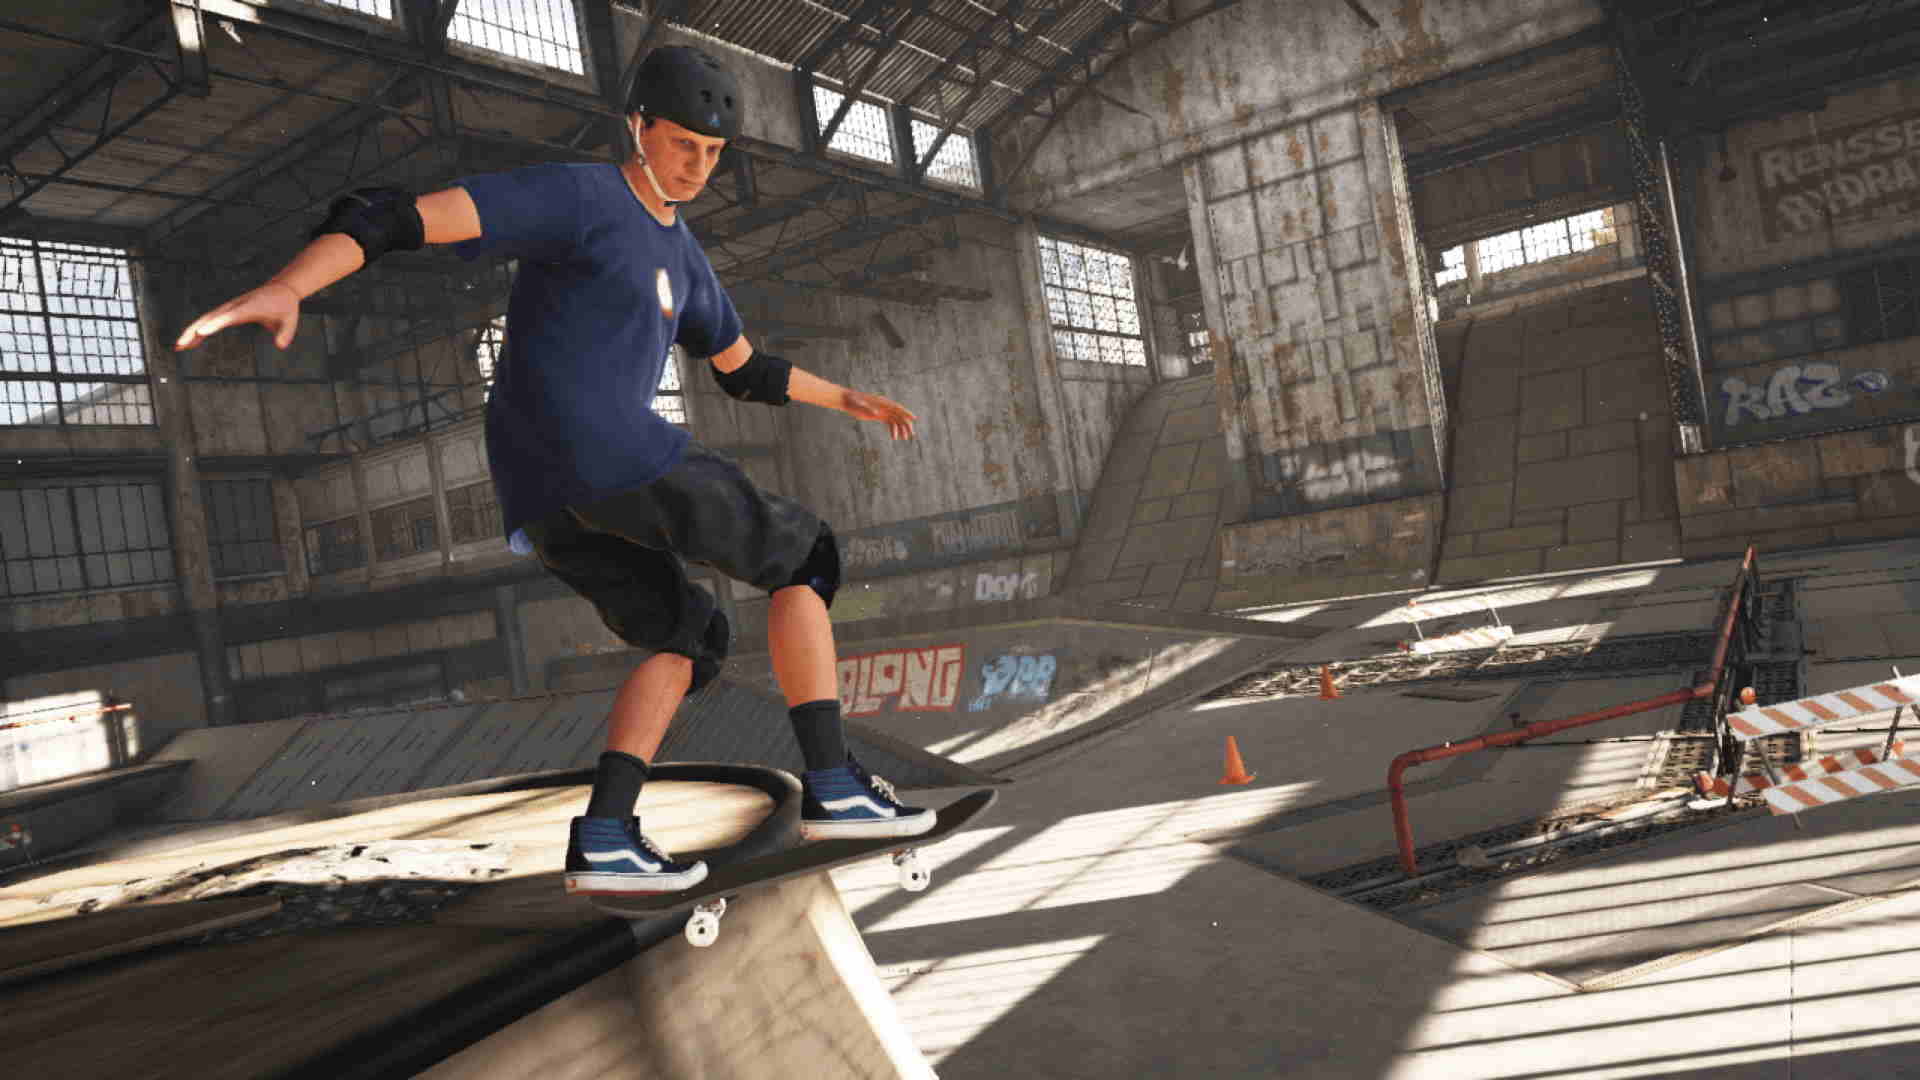 Tony Hawk's Pro Skater 1 and 2 - PS4, PlayStation 4